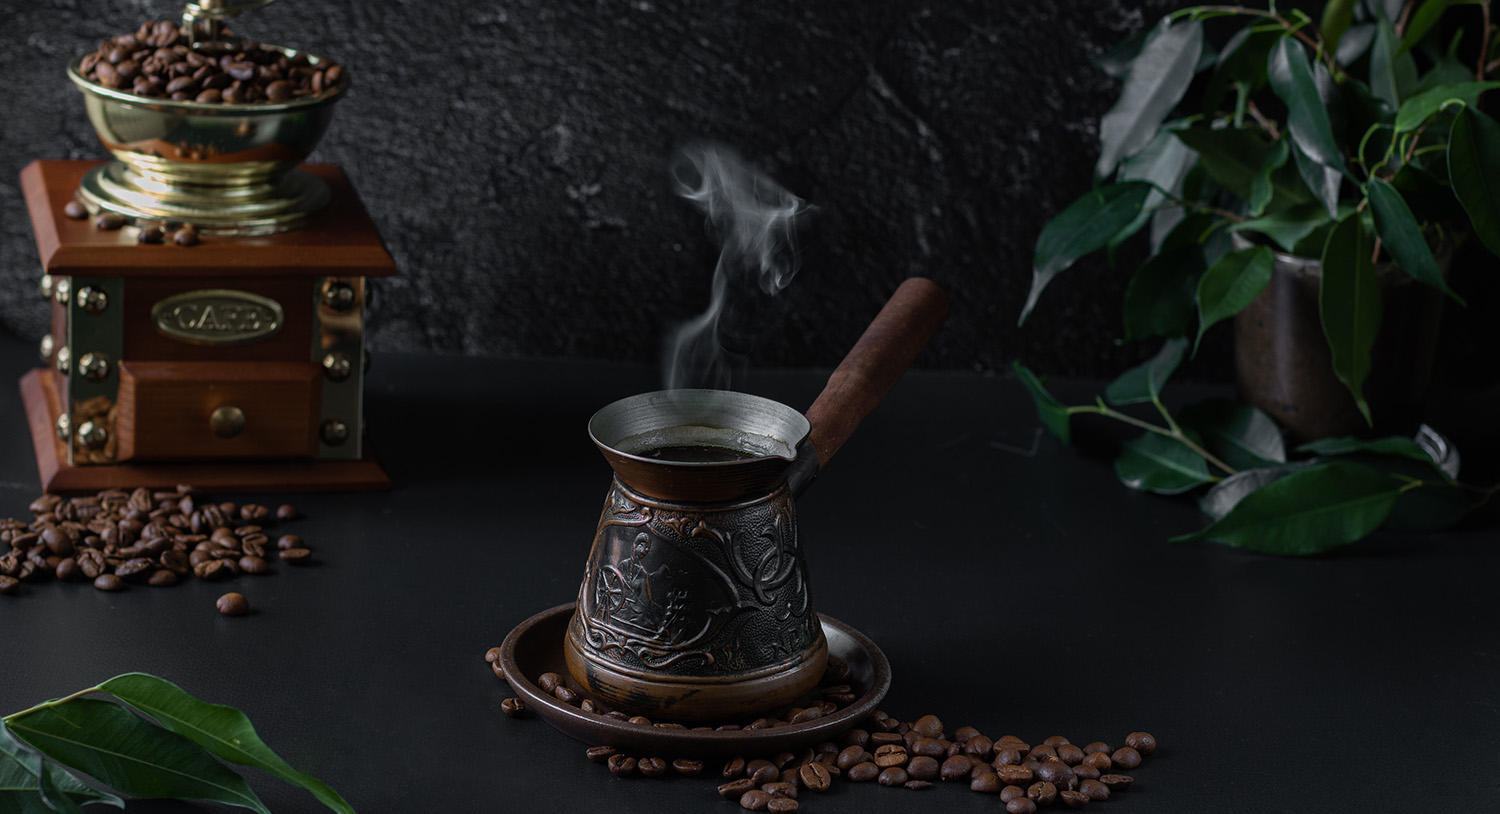 dżezwa-ibrik-kawa-po-turecku-warzenie-kawy-parzenie-kawy-naparzanie-kawy-mocna-kawa-młynek-do-kawy-kawa-ziarnista-ziarna-kawy